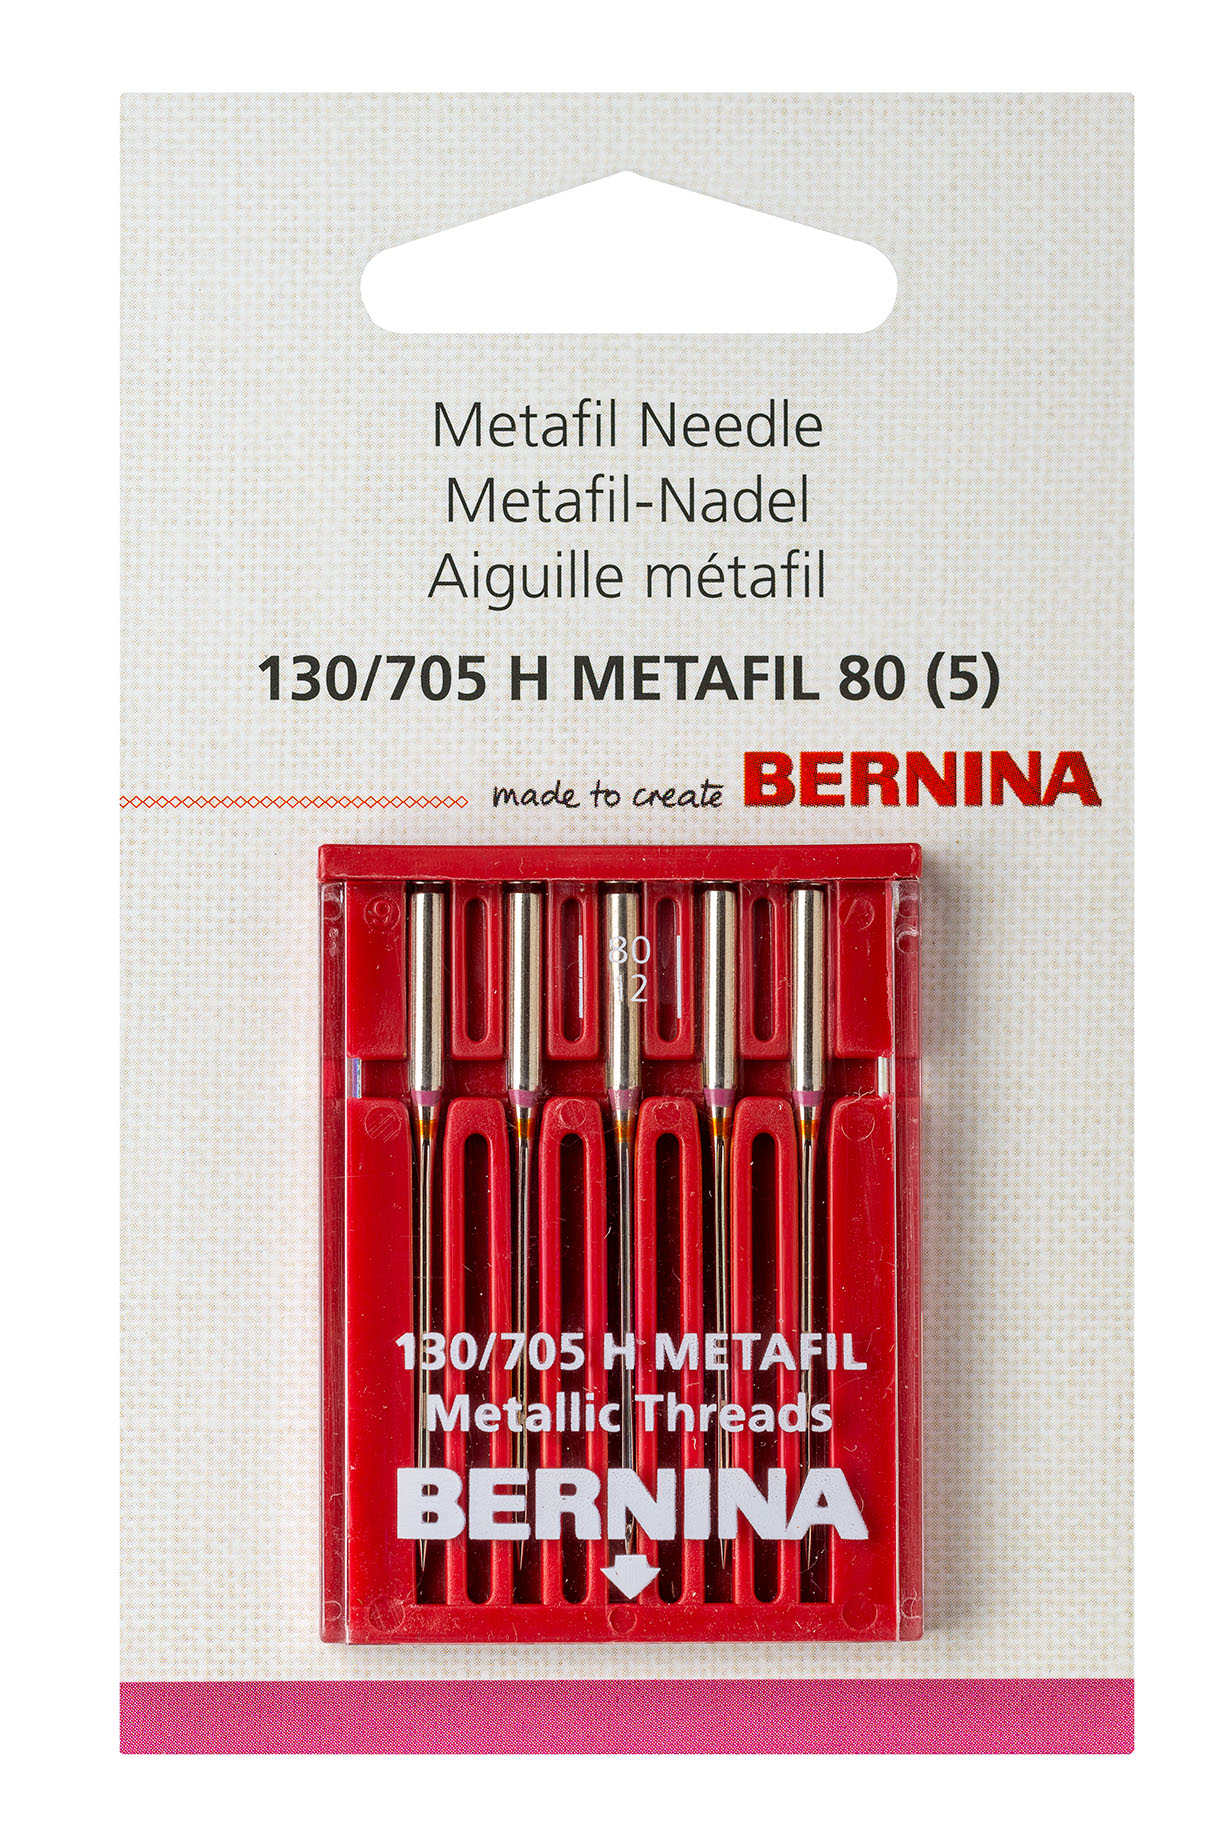 Metafil Needle